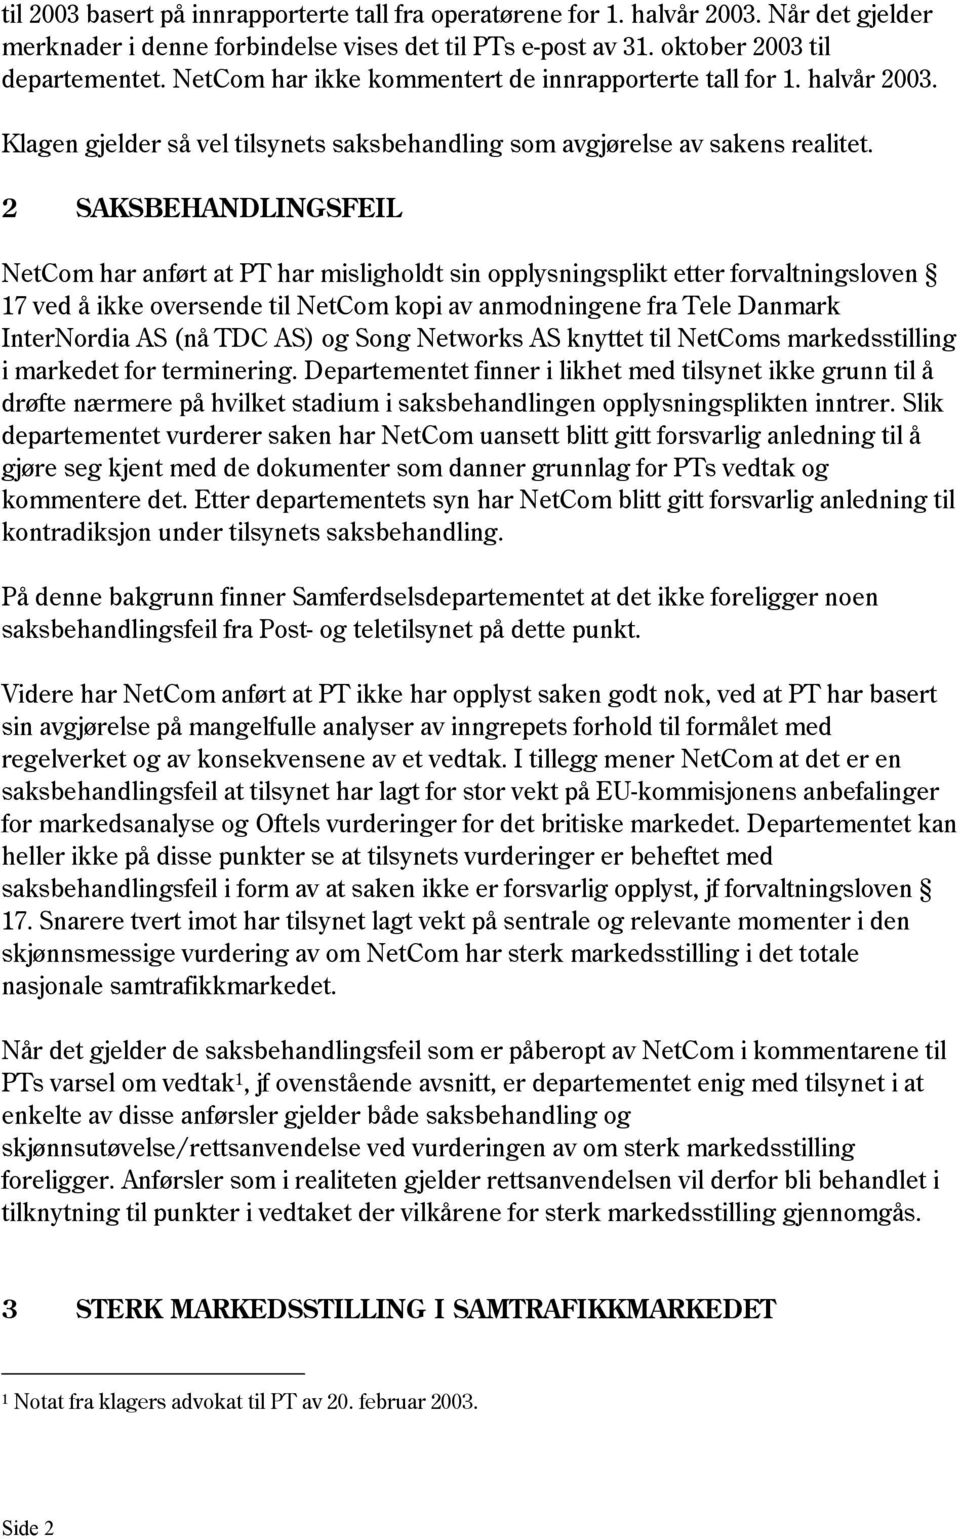 2 SAKSBEHANDLINGSFEIL NetCom har anført at PT har misligholdt sin opplysningsplikt etter forvaltningsloven 17 ved å ikke oversende til NetCom kopi av anmodningene fra Tele Danmark InterNordia AS (nå